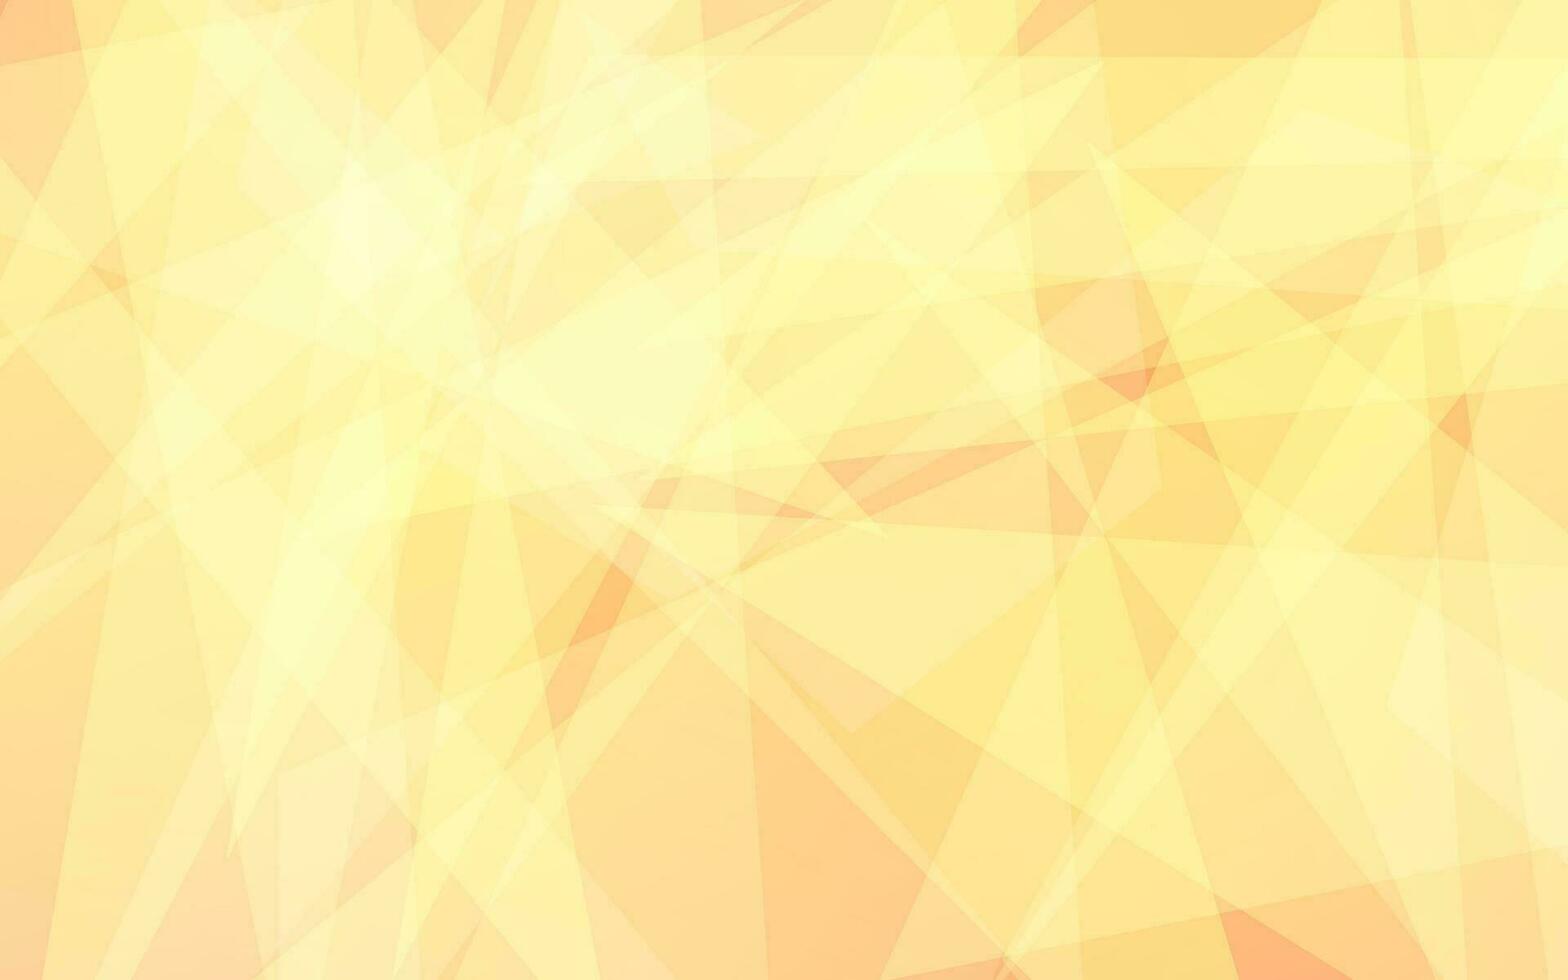 abstrakt transparant gul ljus bakgrund vetor vektor